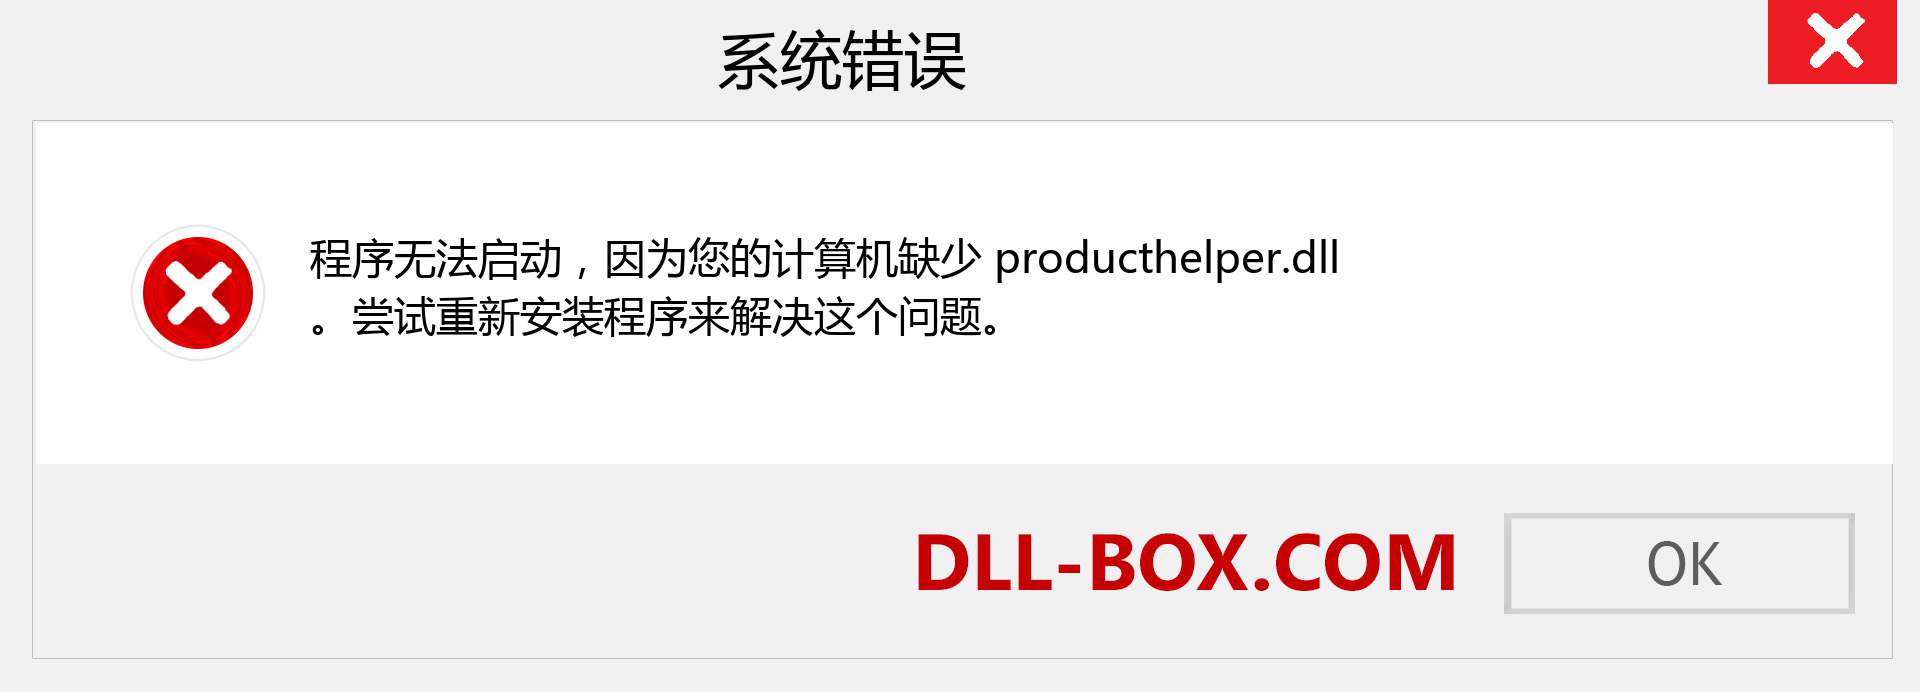 producthelper.dll 文件丢失？。 适用于 Windows 7、8、10 的下载 - 修复 Windows、照片、图像上的 producthelper dll 丢失错误